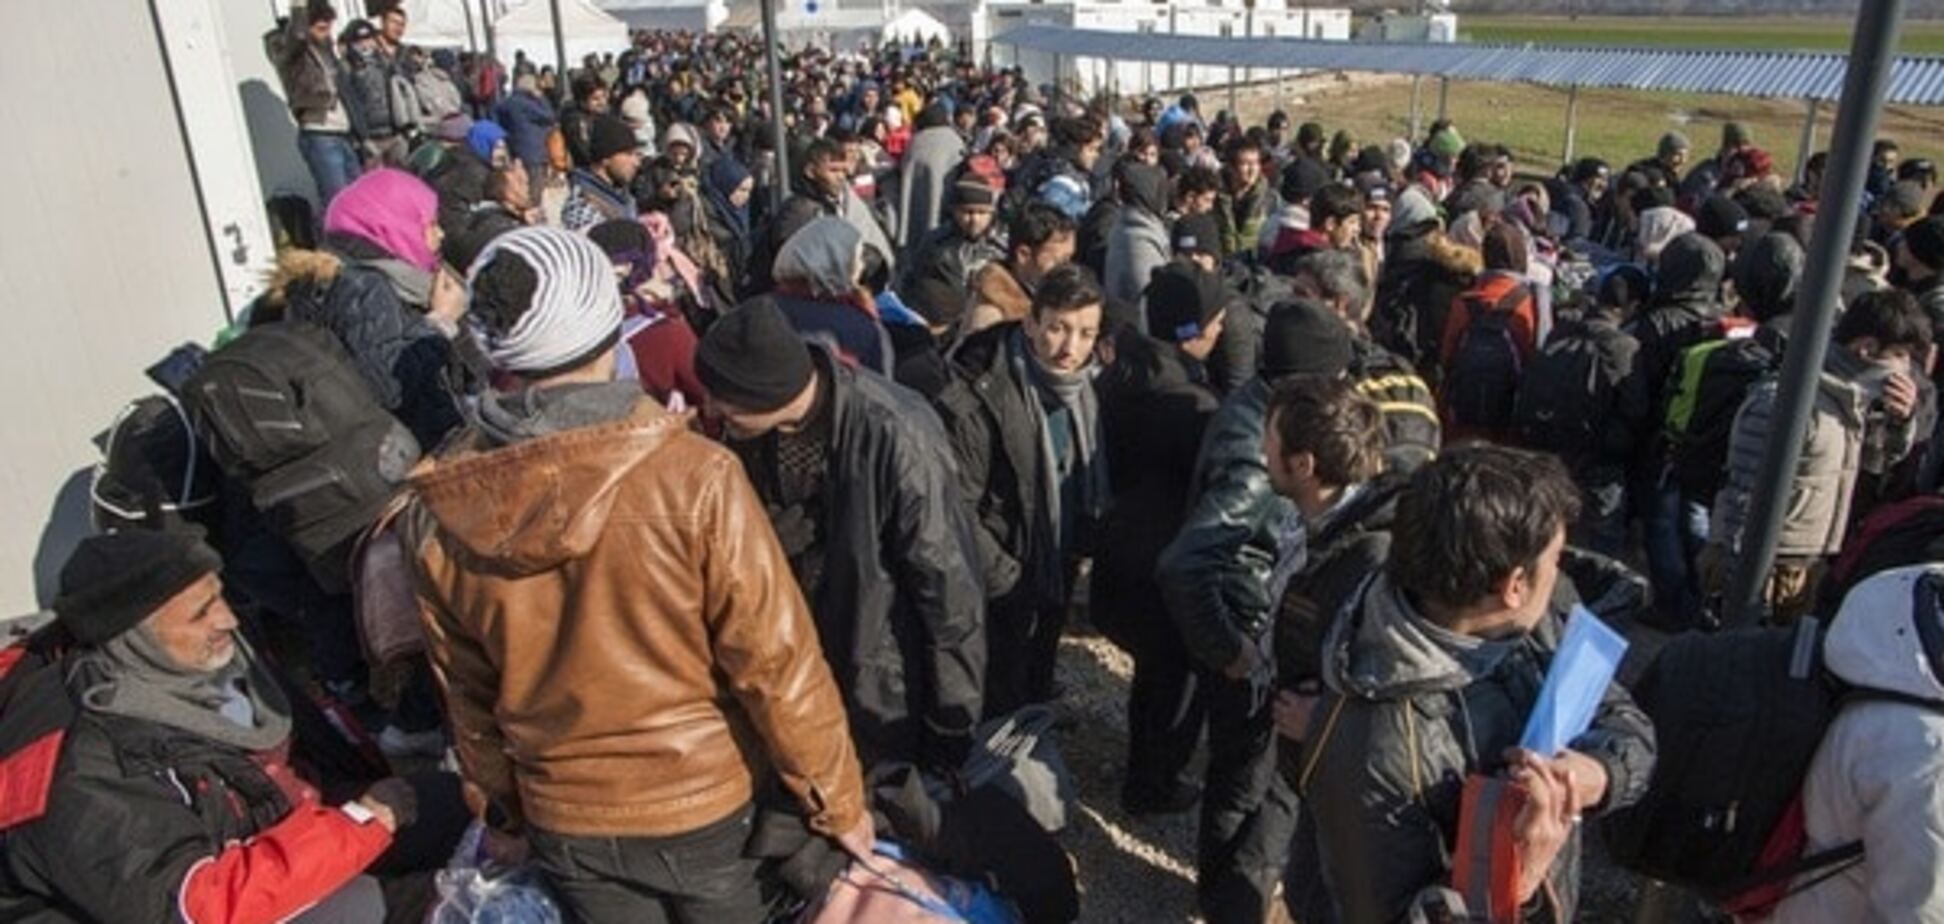 Не гумова: ще одна європейська країна 'прикрила' кордони для біженців